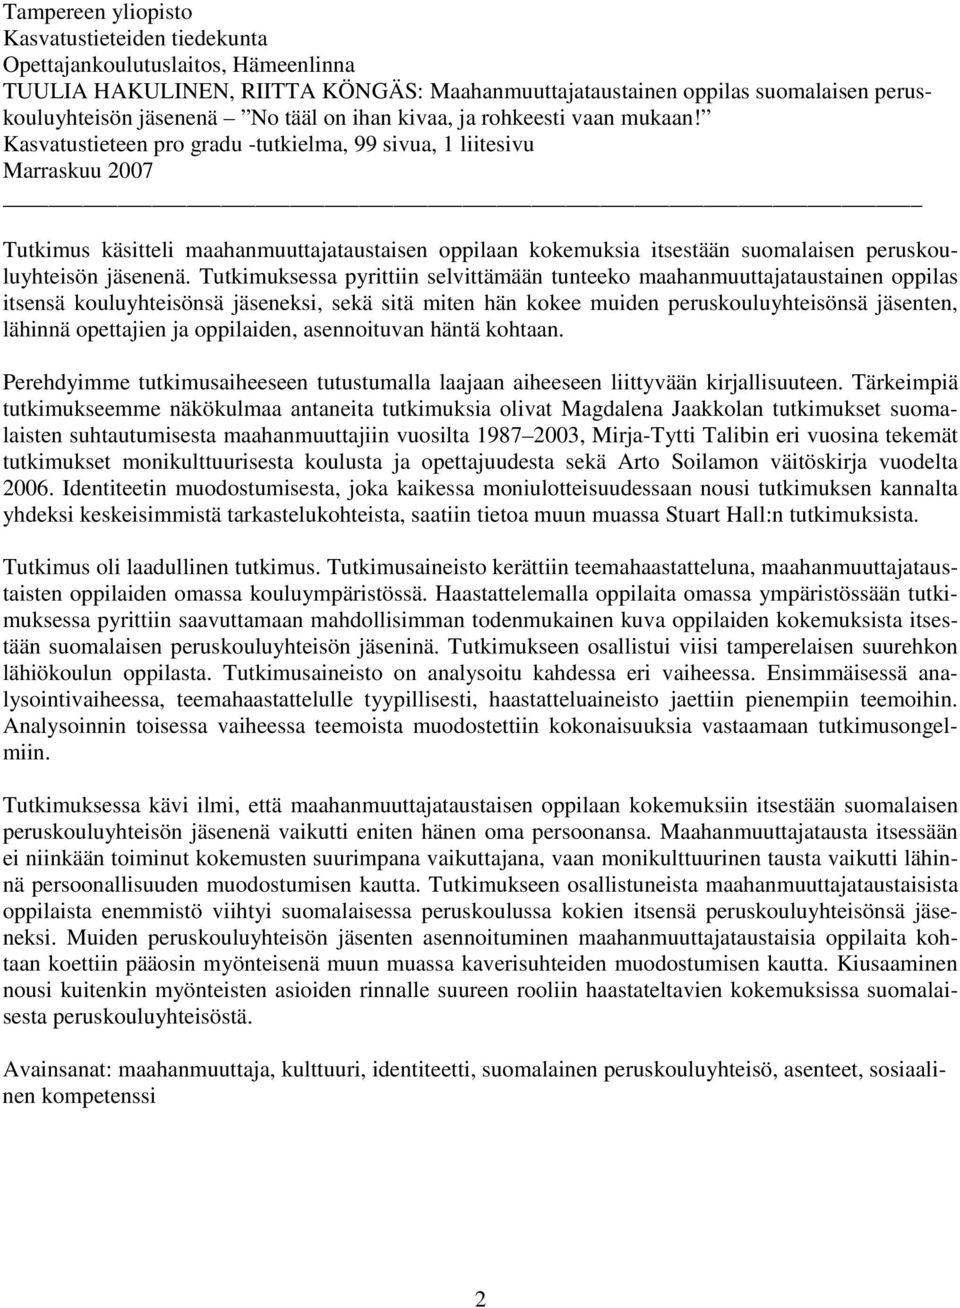 Kasvatustieteen pro gradu -tutkielma, 99 sivua, 1 liitesivu Marraskuu 2007 Tutkimus käsitteli maahanmuuttajataustaisen oppilaan kokemuksia itsestään suomalaisen peruskouluyhteisön jäsenenä.